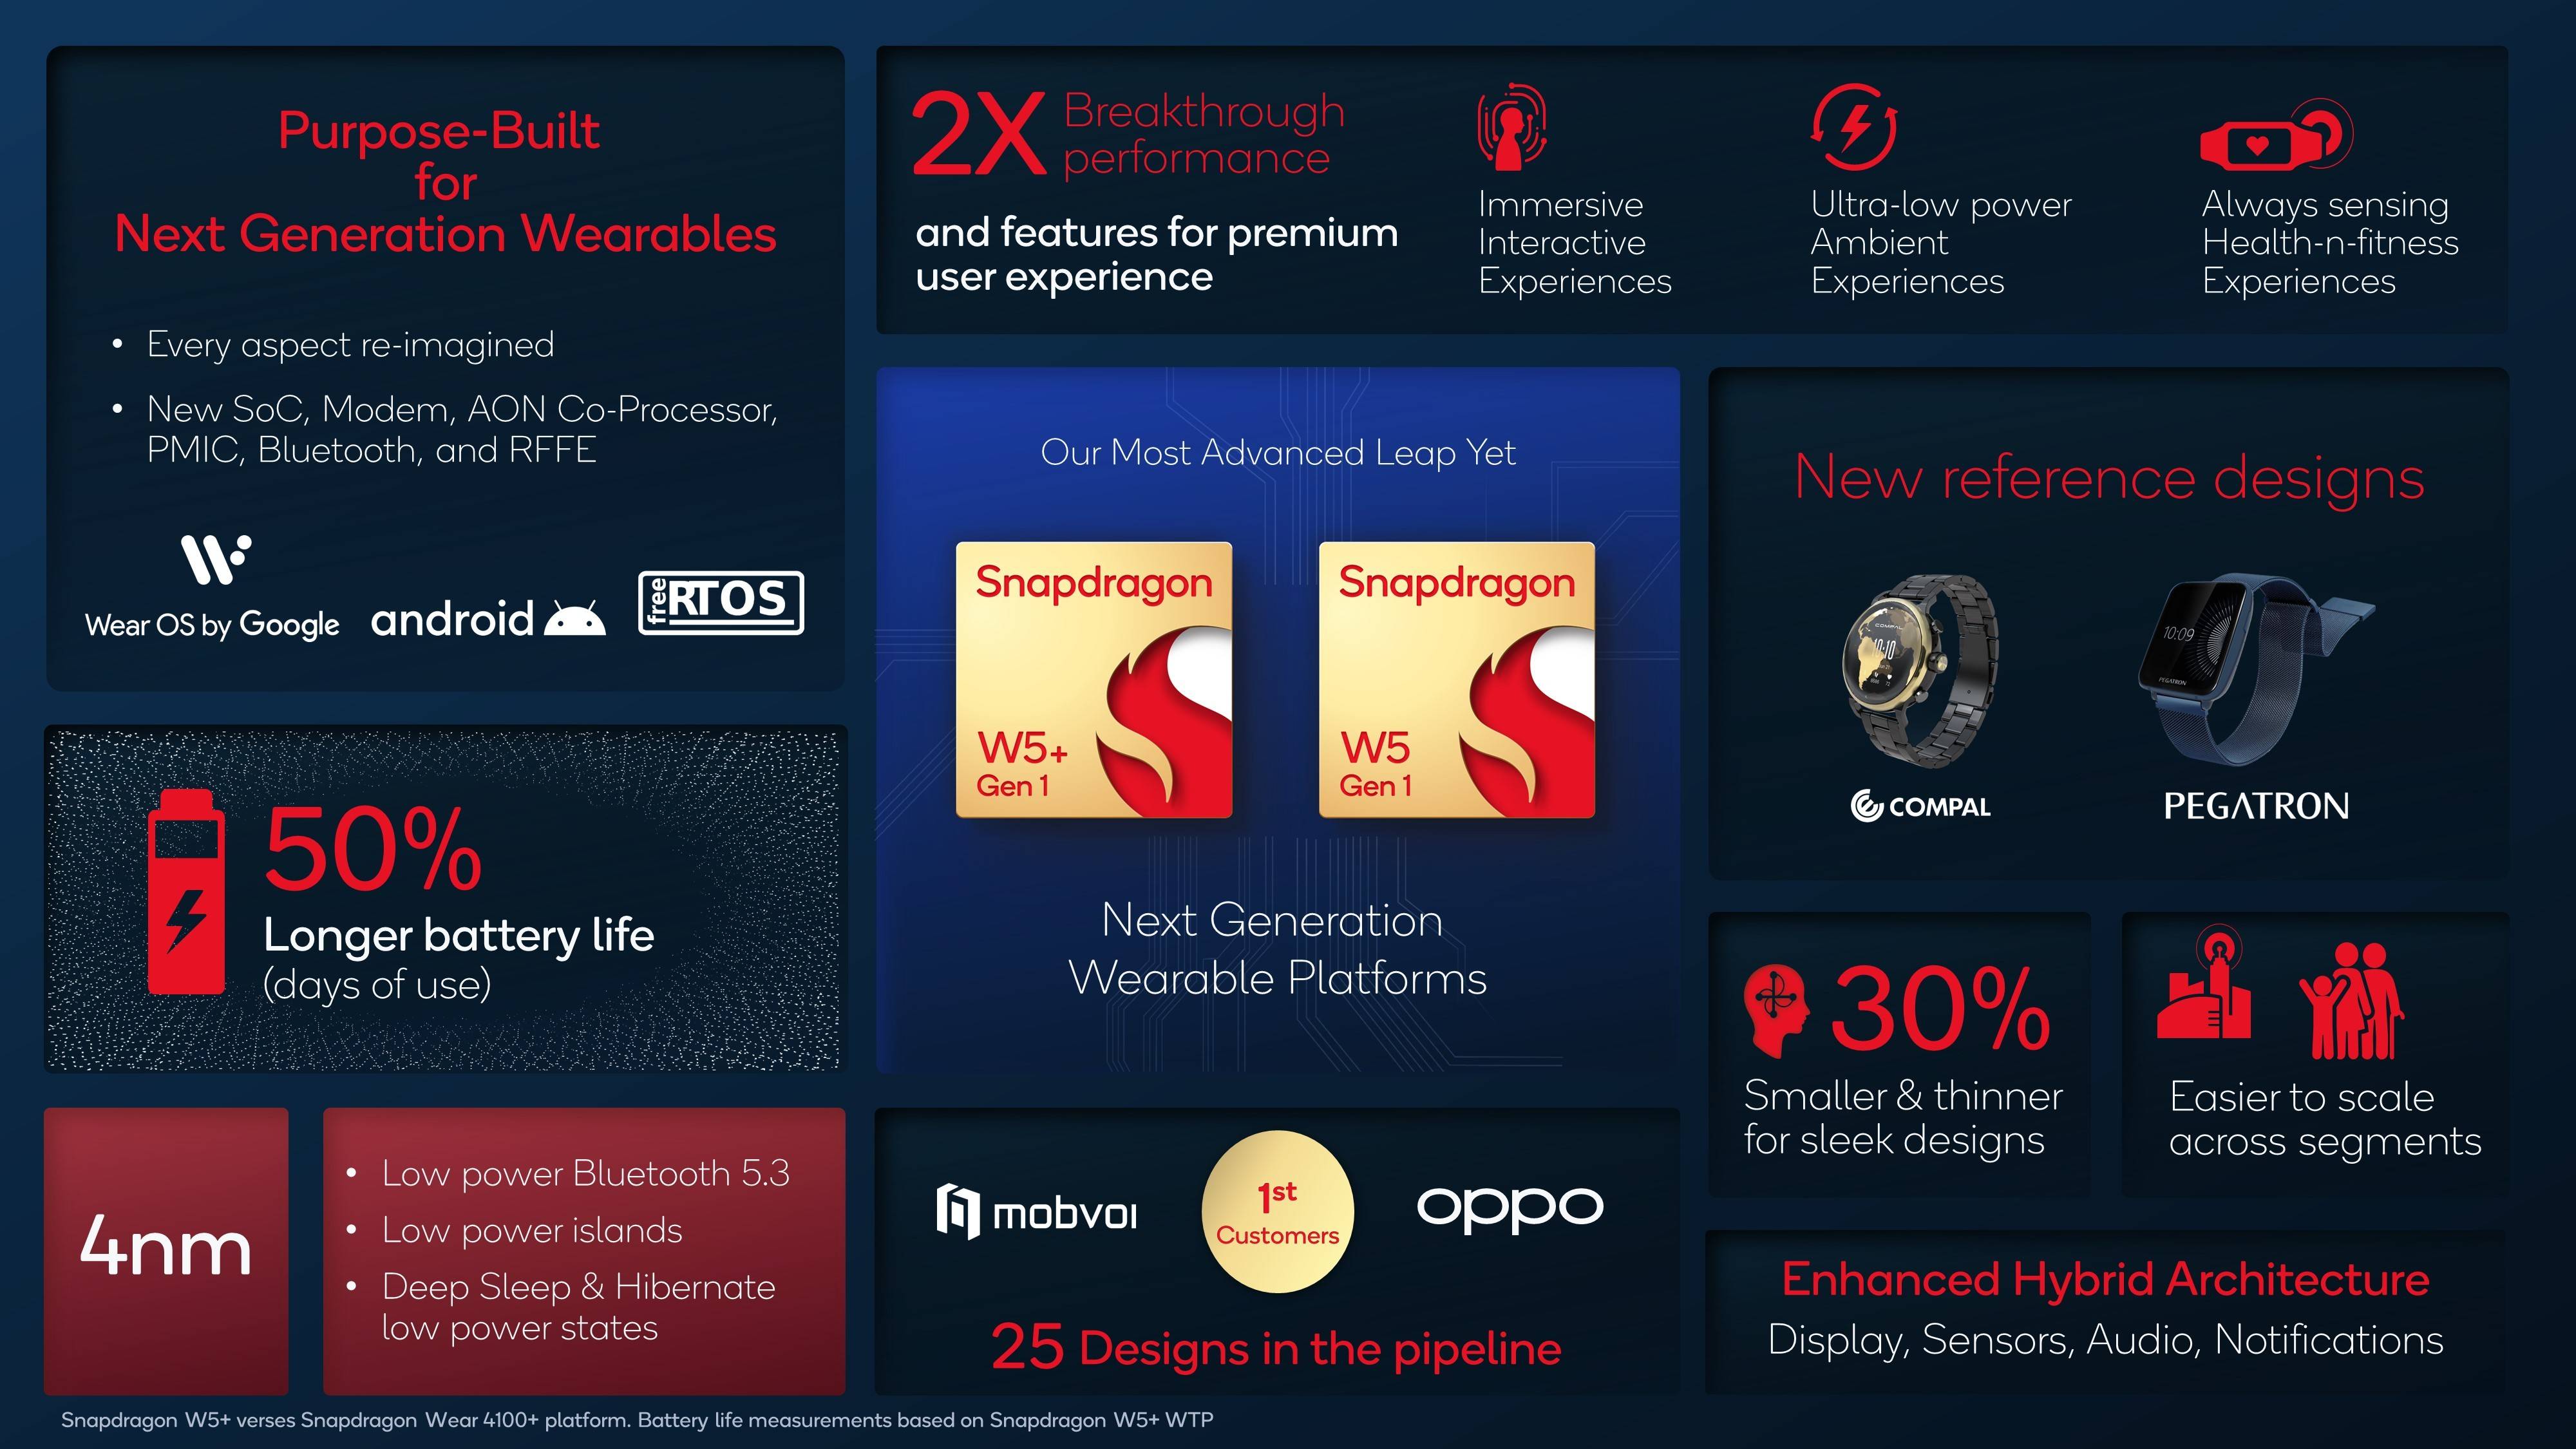 Snapdragon W5 Plus Gen 1 Features